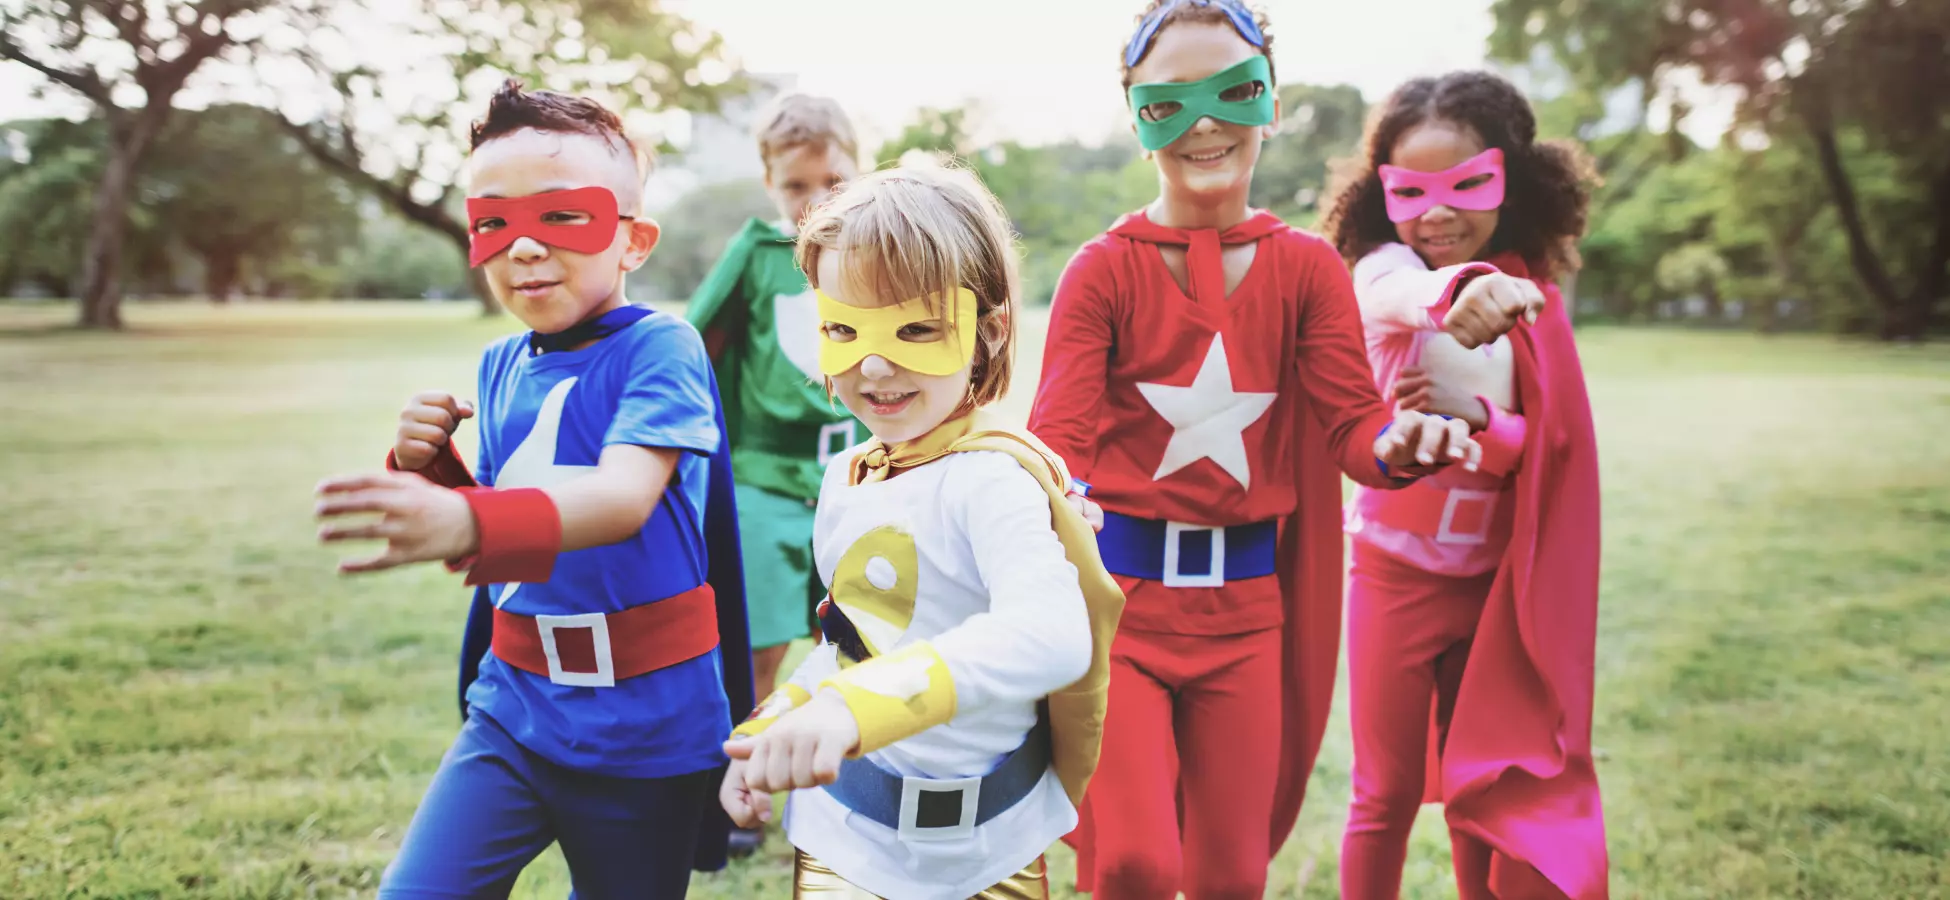 Children dressed as superheroes